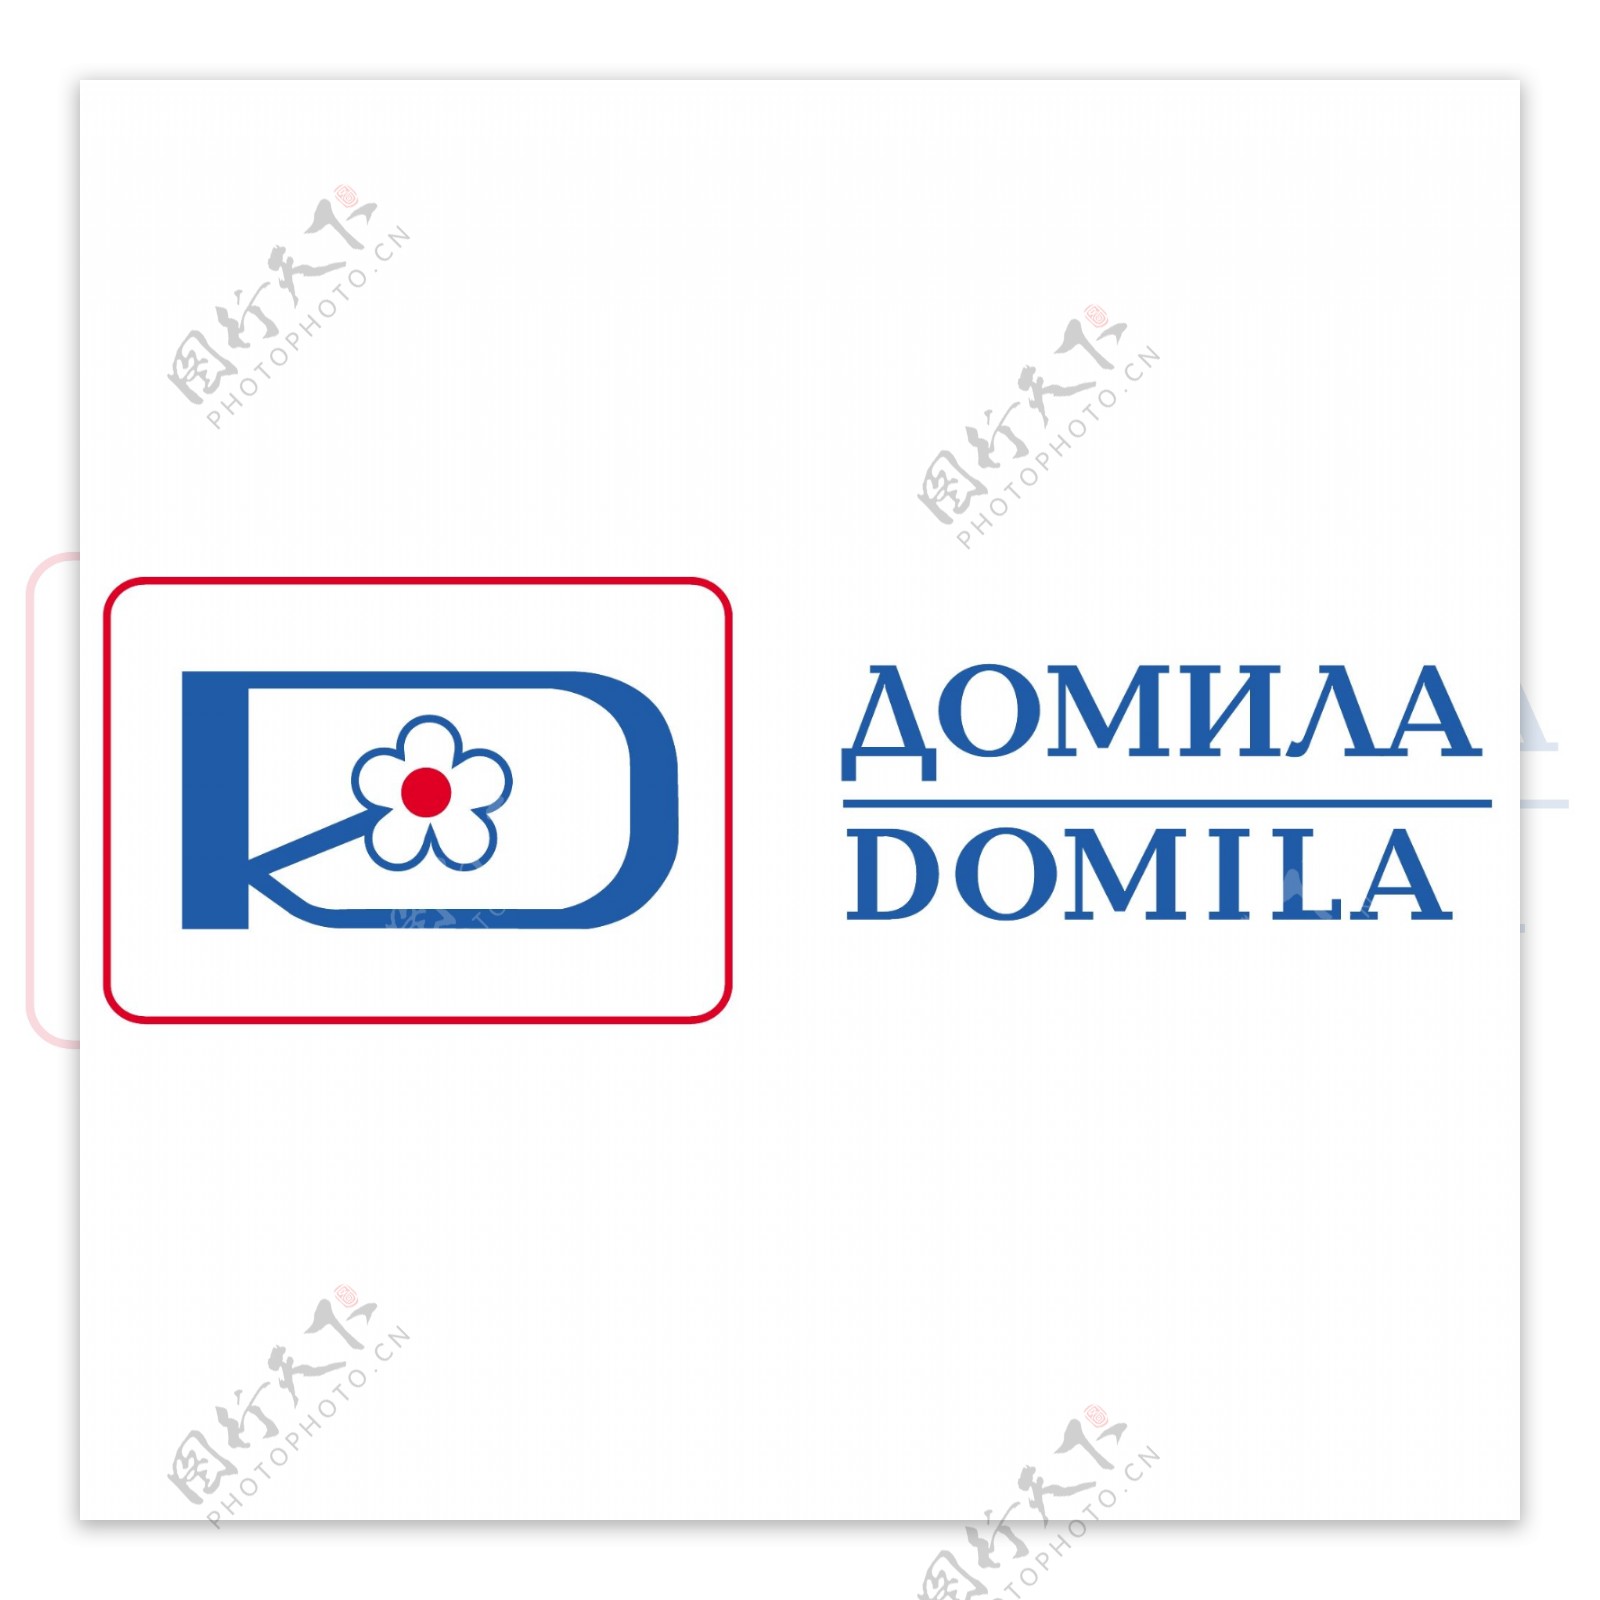 蓝色小花朵图标logo设计